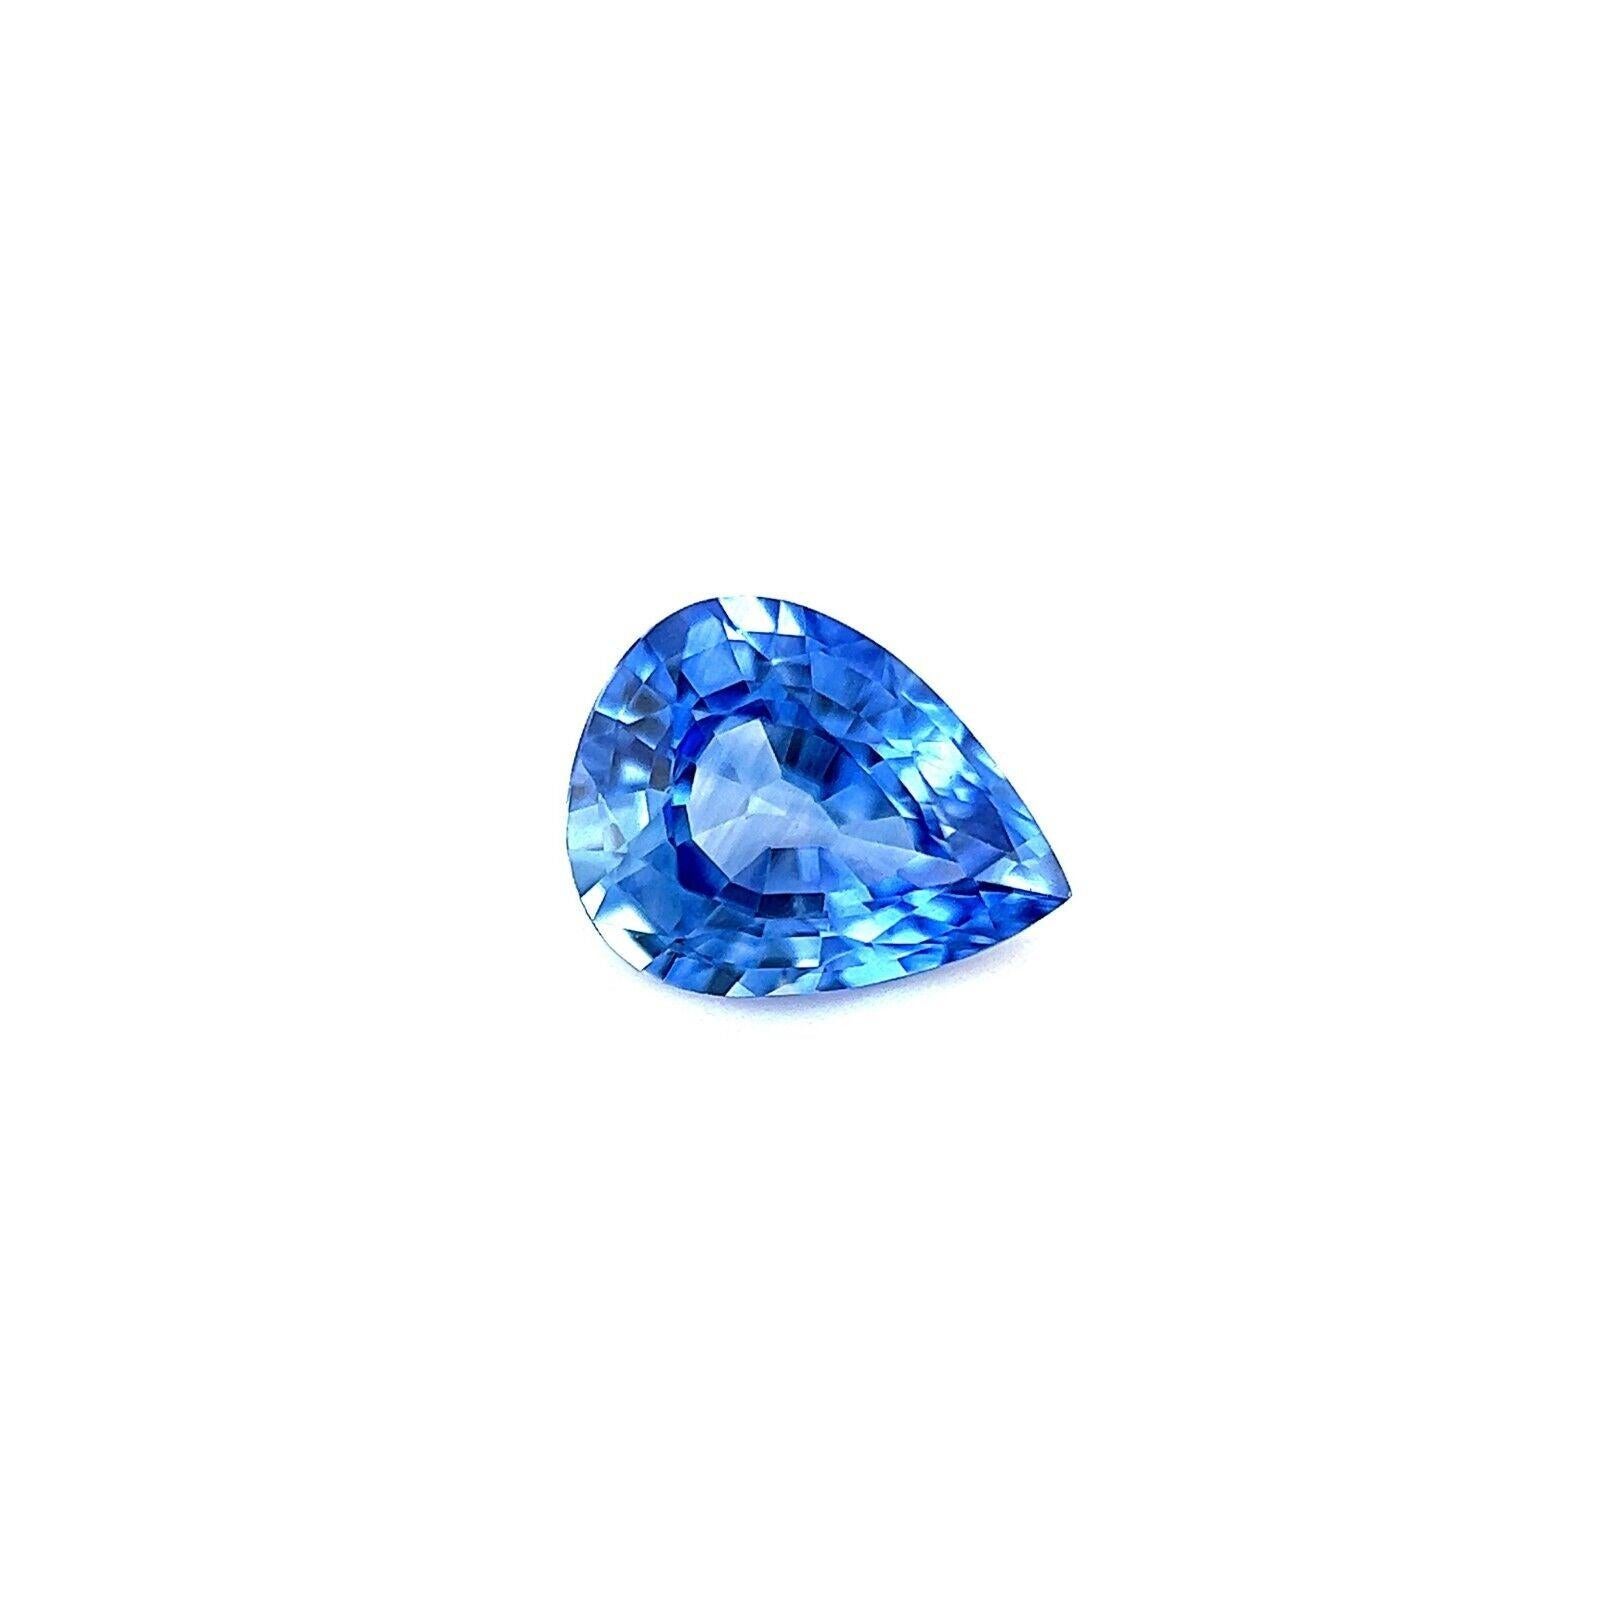 Fine 0.64ct Saphir de Ceylan bleu Malibu taille poire pierre précieuse rare 6.2x4.8mm VVS

Fine pierre précieuse saphir de Ceylan bleu Malibu.
Rare saphir avec une belle couleur bleu Malibu vif et une excellente clarté, VVS. Il présente également